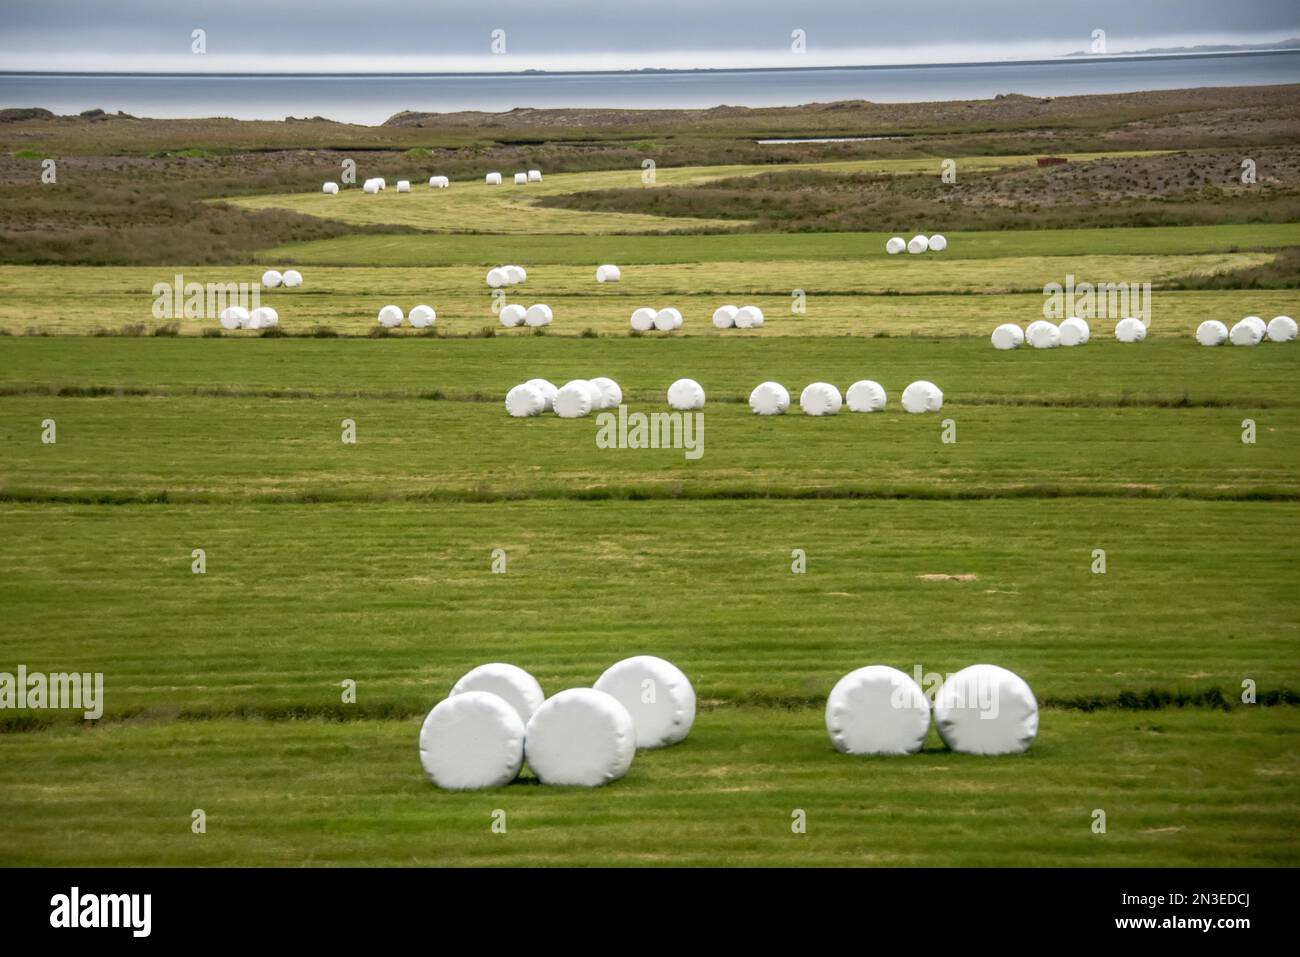 Terreni agricoli punteggiati di balle di fieno rotonde tagliate per l'alimentazione degli animali e confezionate in plastica per proteggere contro gli inverni rigidi nella regione settentrionale dell'Islanda dell'IVA... Foto Stock